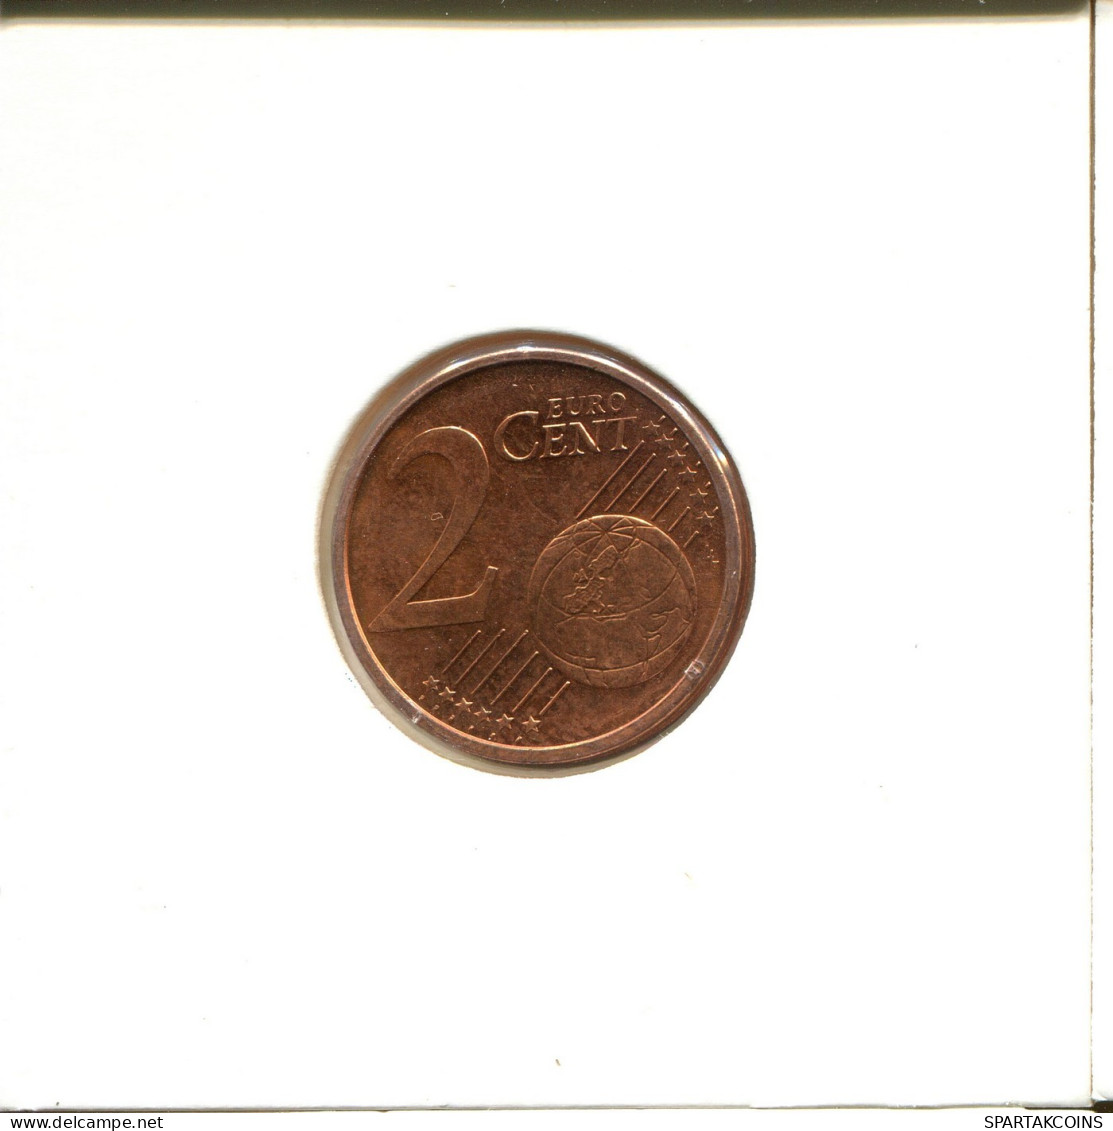 2 EURO CENTS 2010 ALEMANIA Moneda GERMANY #EU146.E.A - Allemagne